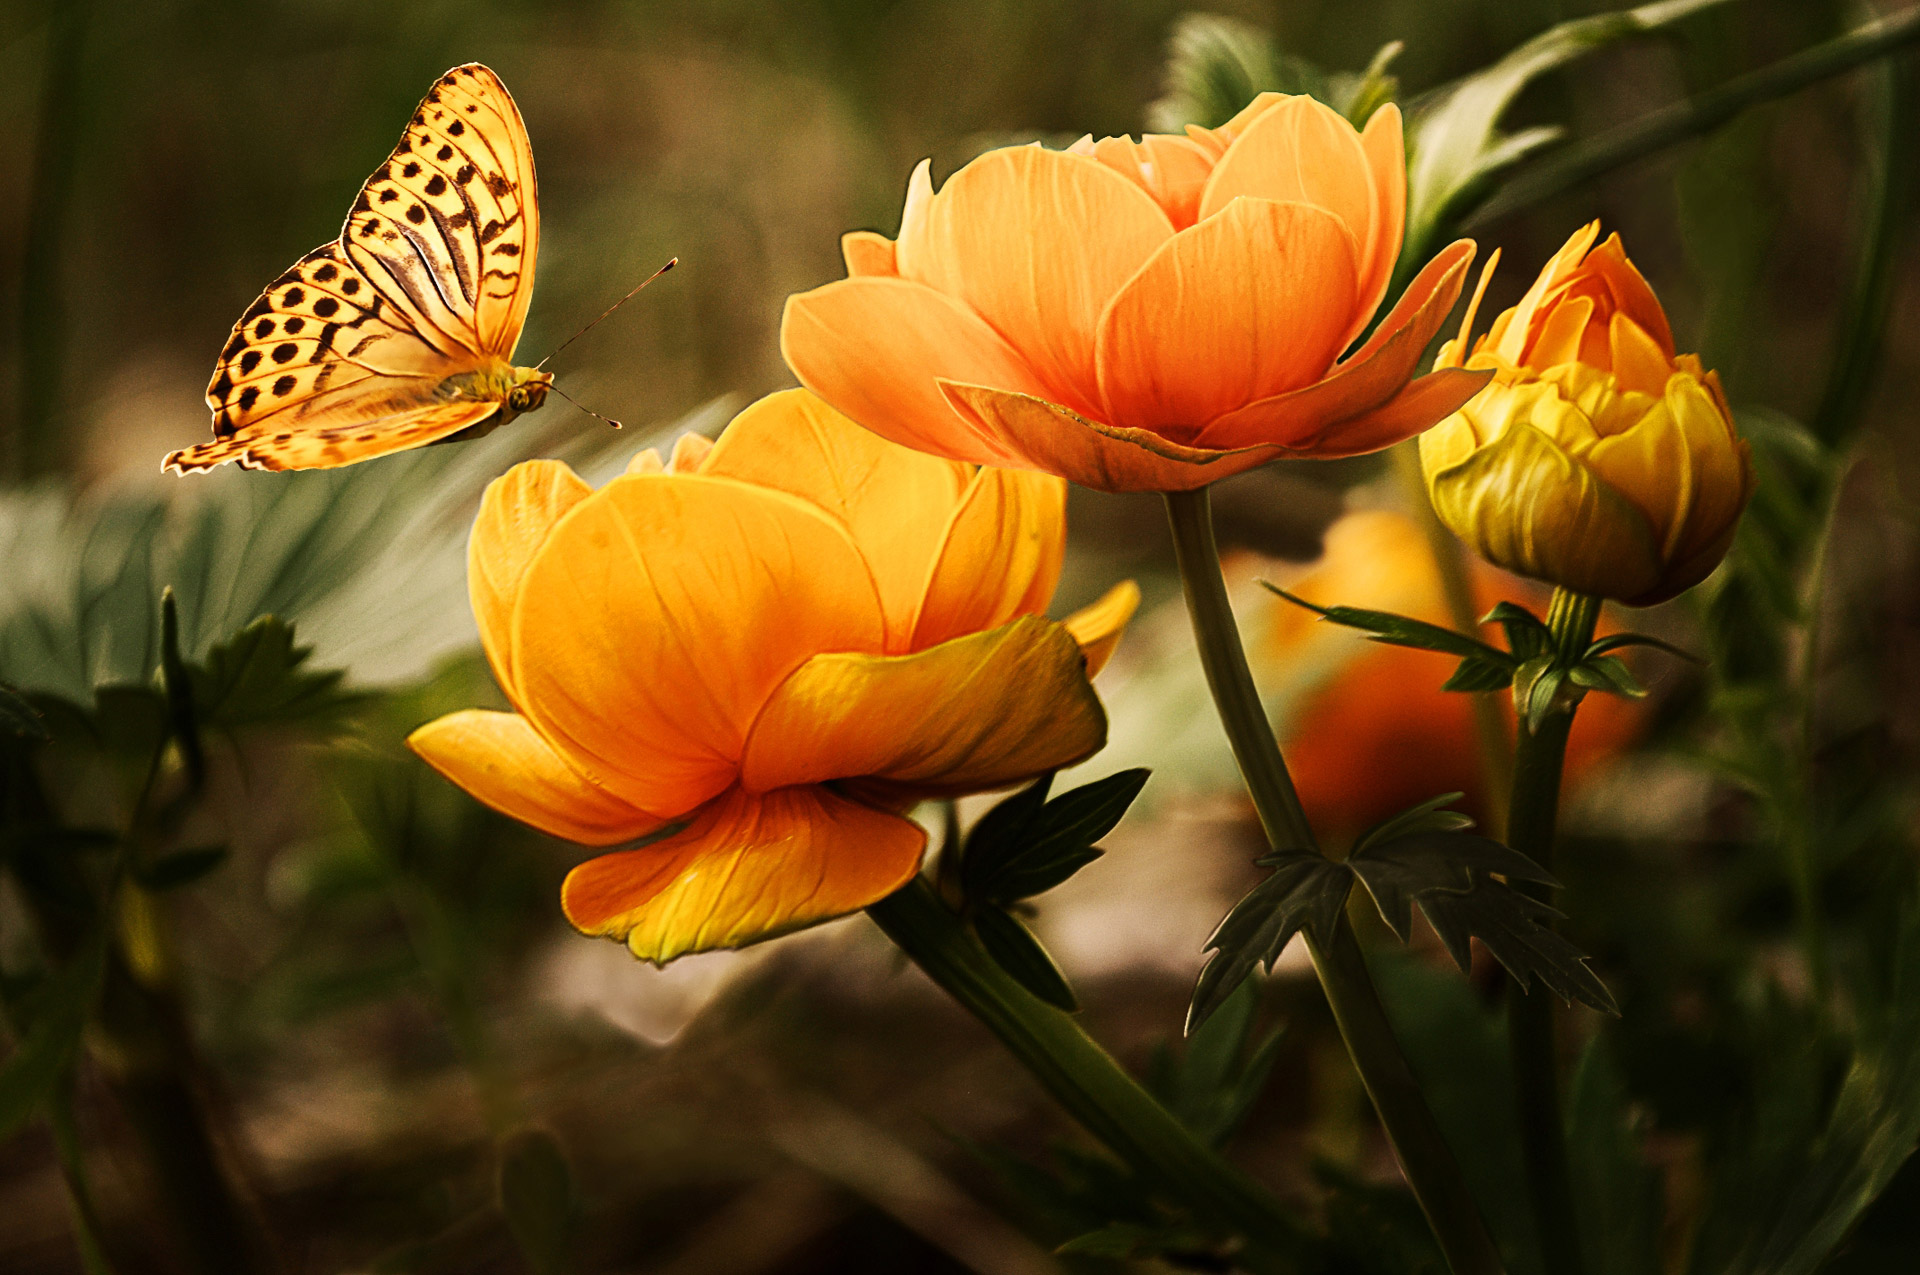 Descarga gratuita de fondo de pantalla para móvil de Animales, Flor, Insecto, Mariposa, Flor Amarilla.